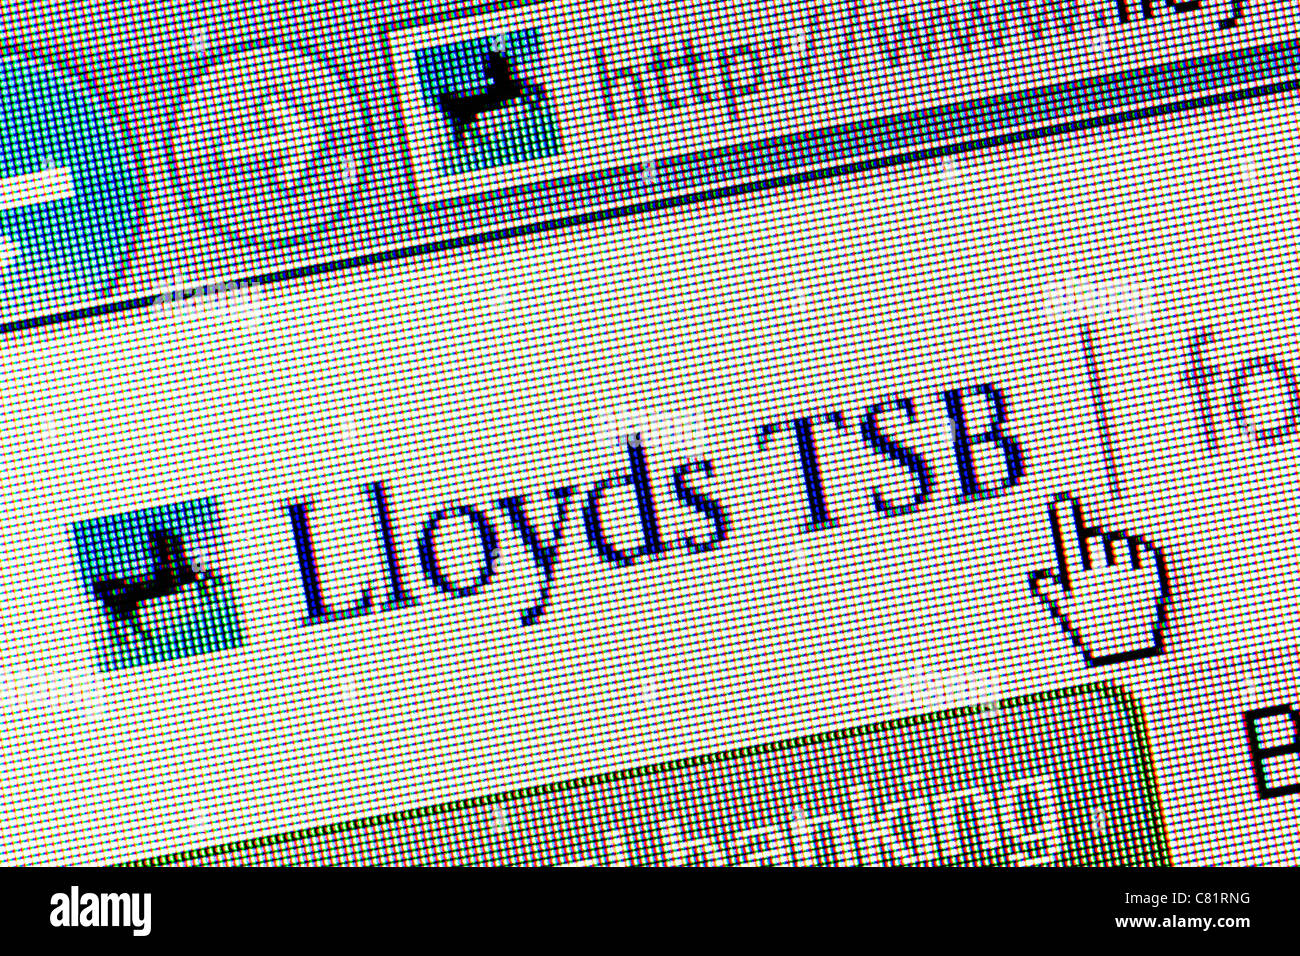 Lloyds TSB Bank logo et un nouveau site web close up Banque D'Images